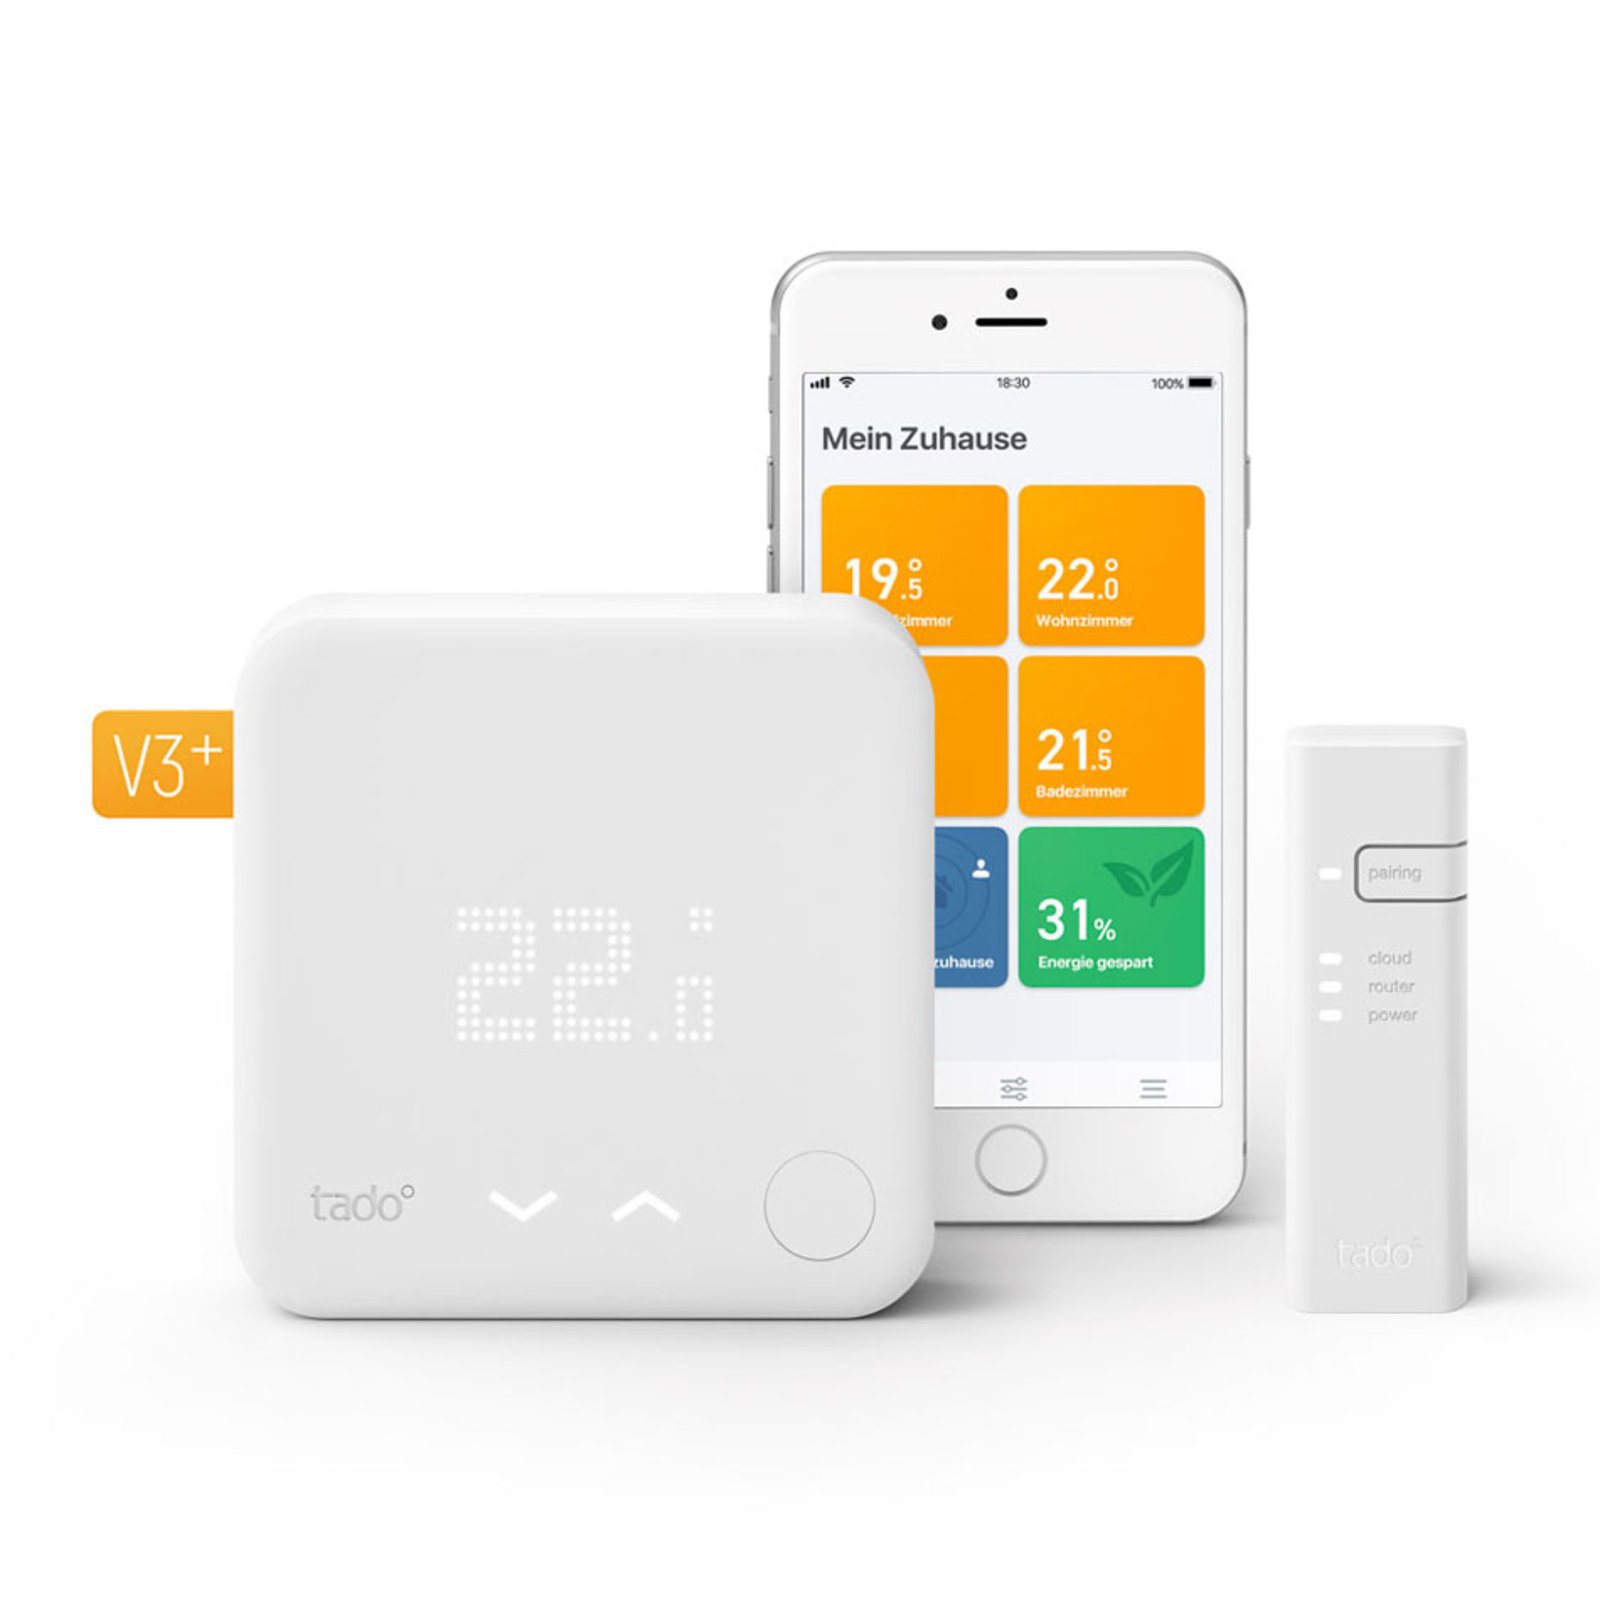 tado° Smart Thermostat Start Kit V3+ Bundle